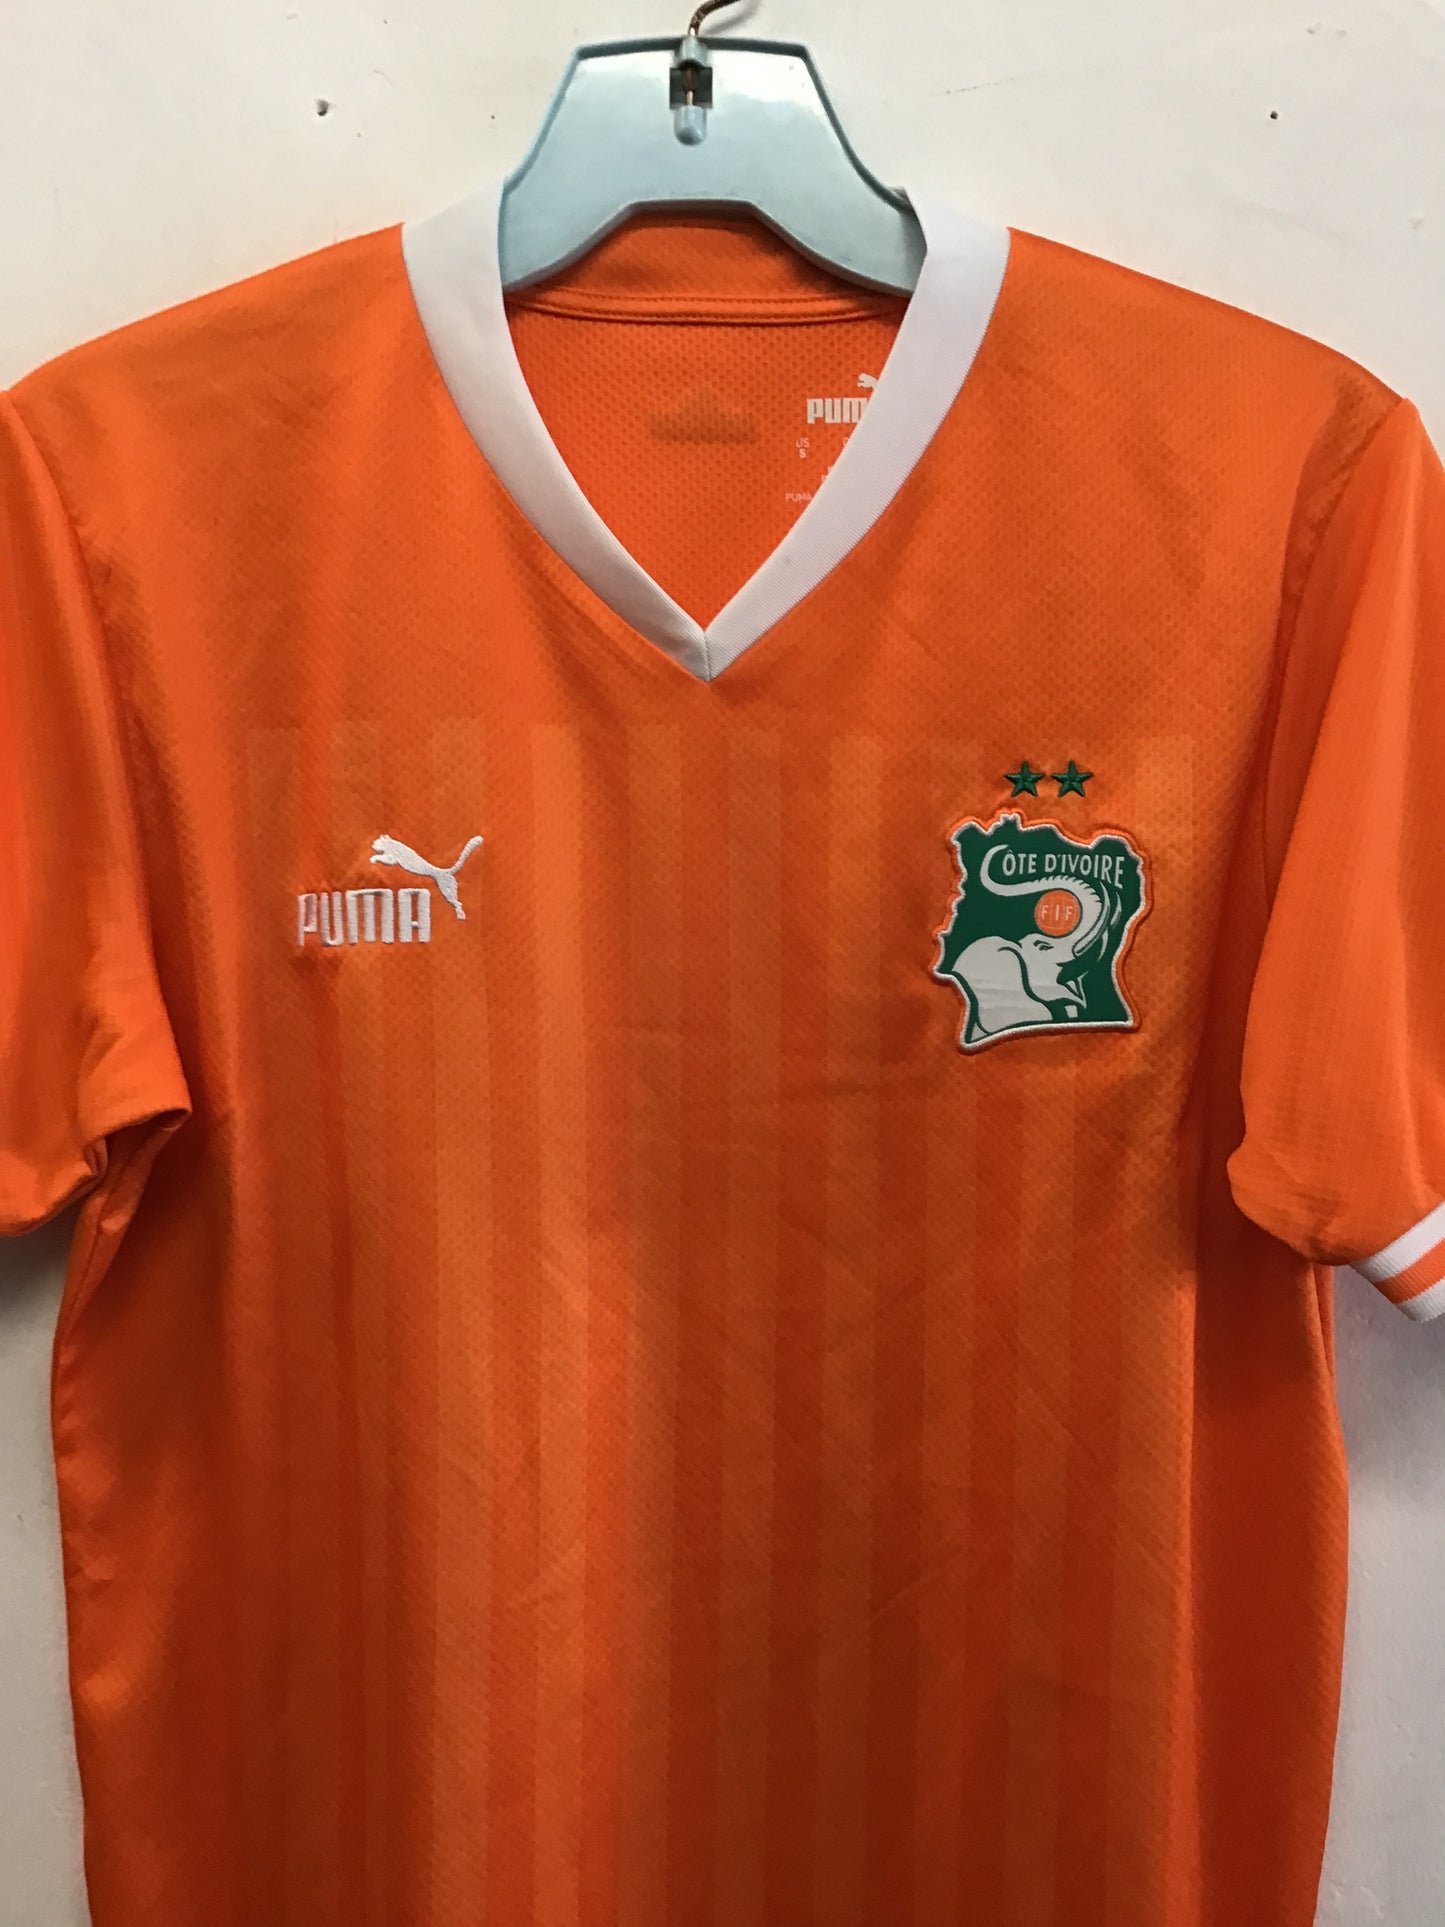 Puma Cote D’Ivoire Ivory Coast Jersey, Size S